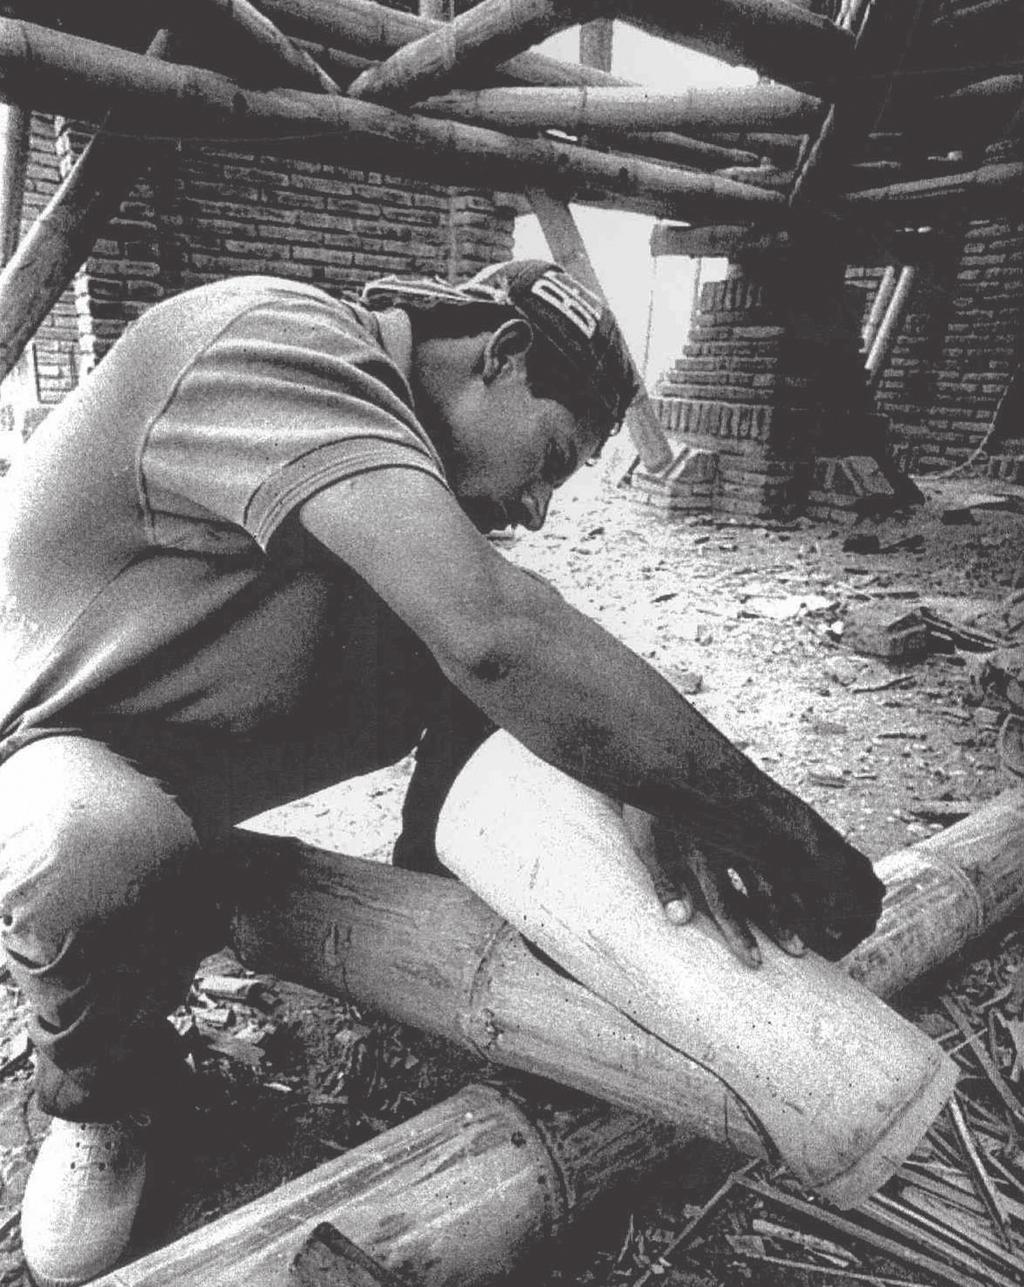 Estruturas em bambu O bambu pode ser empregado em praticamente todos os elementos estruturais de uma construção. Para garantir a segurança do edifício, devemos conhecer bem a espécie empregada.